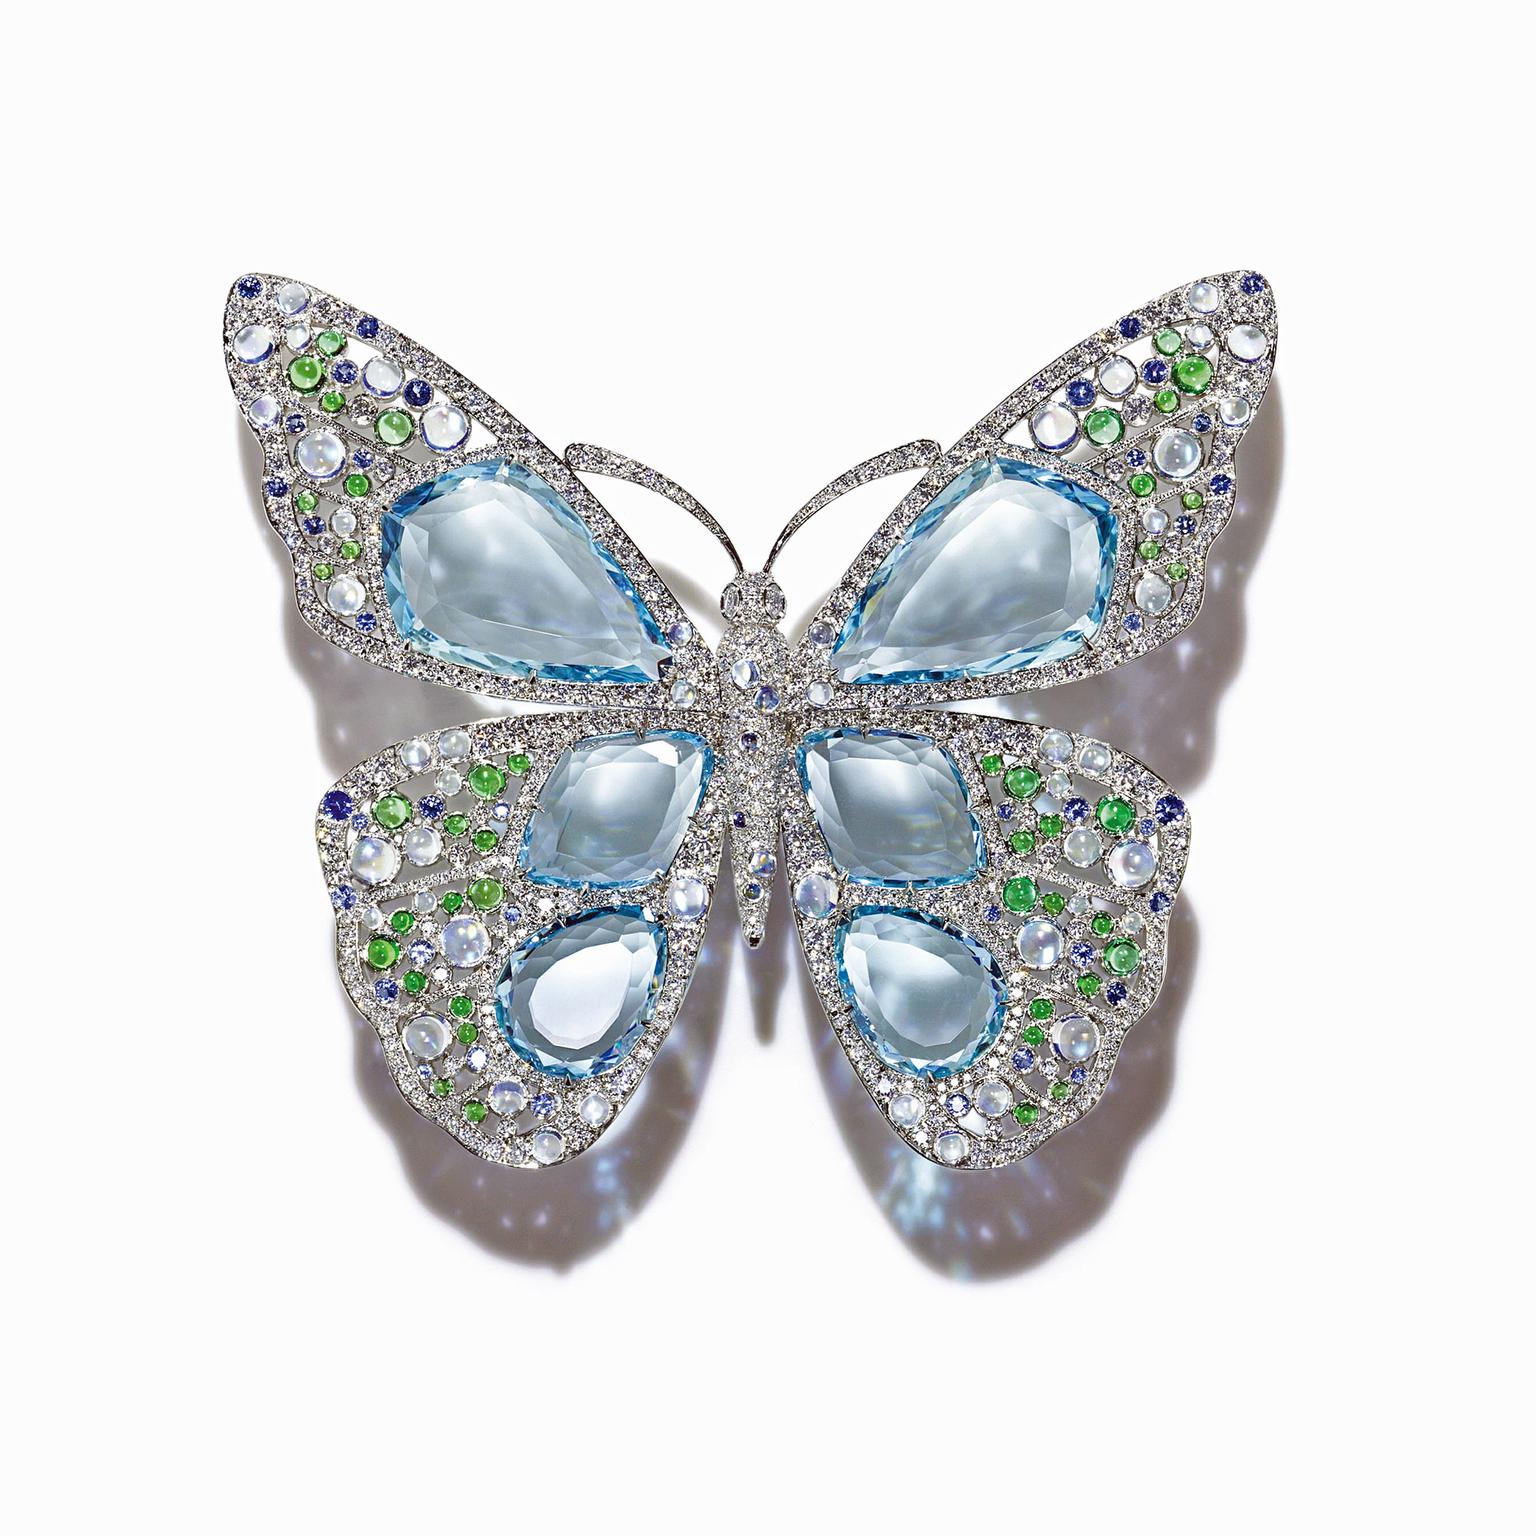 Tiffany Blue Book Butterfly aquamarine brooch